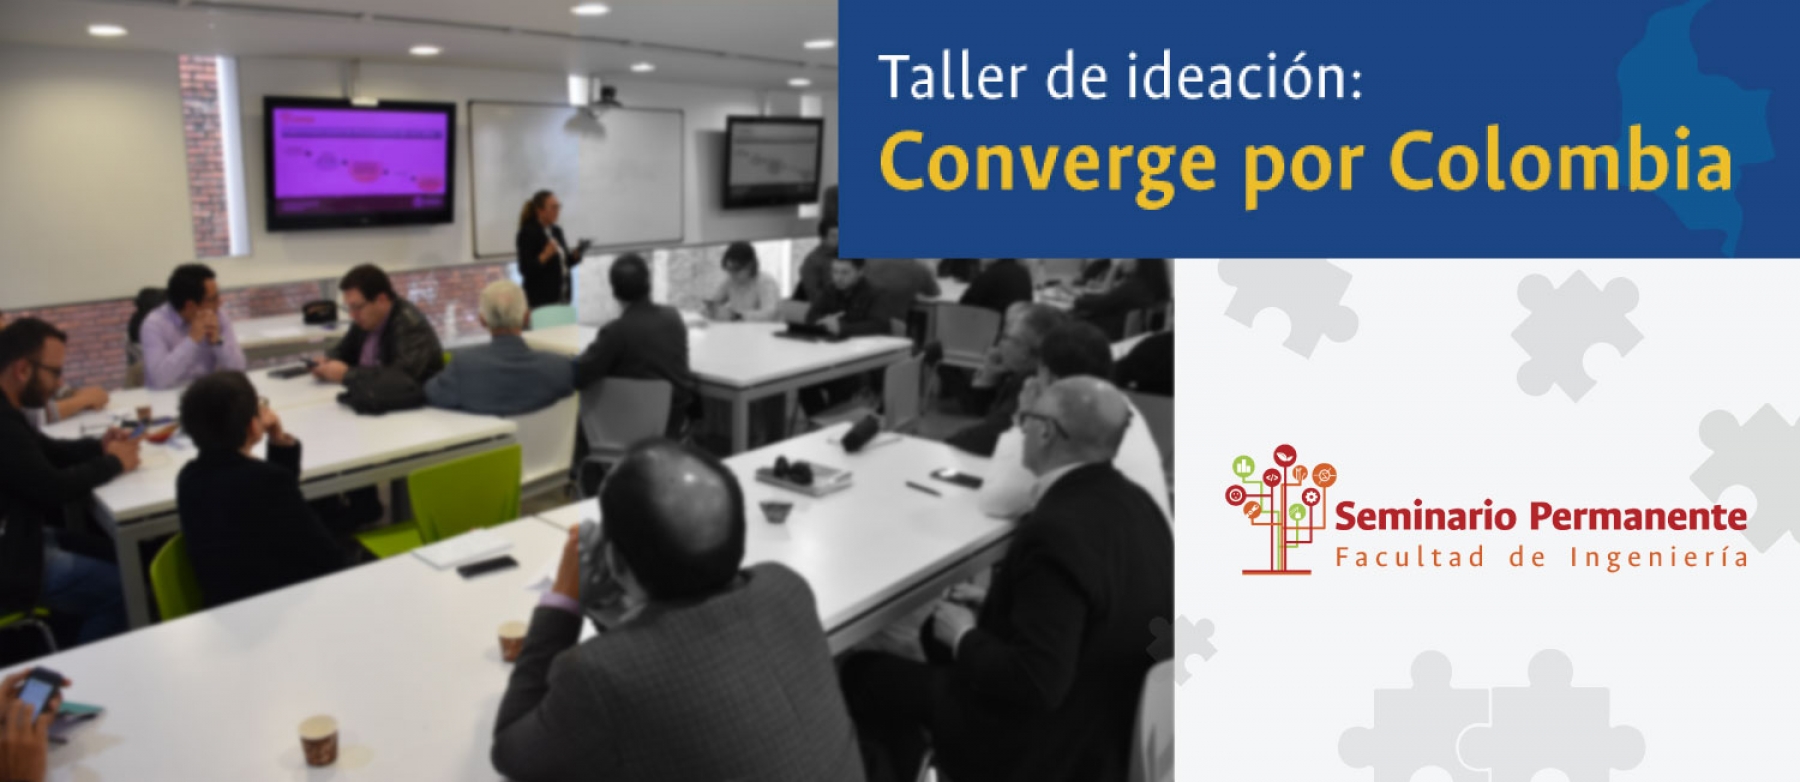 Taller de Seminario Permanente busca generar un espacio de ideación y cocreación de ideas orientadas al proyecto Convergencia por Colombia